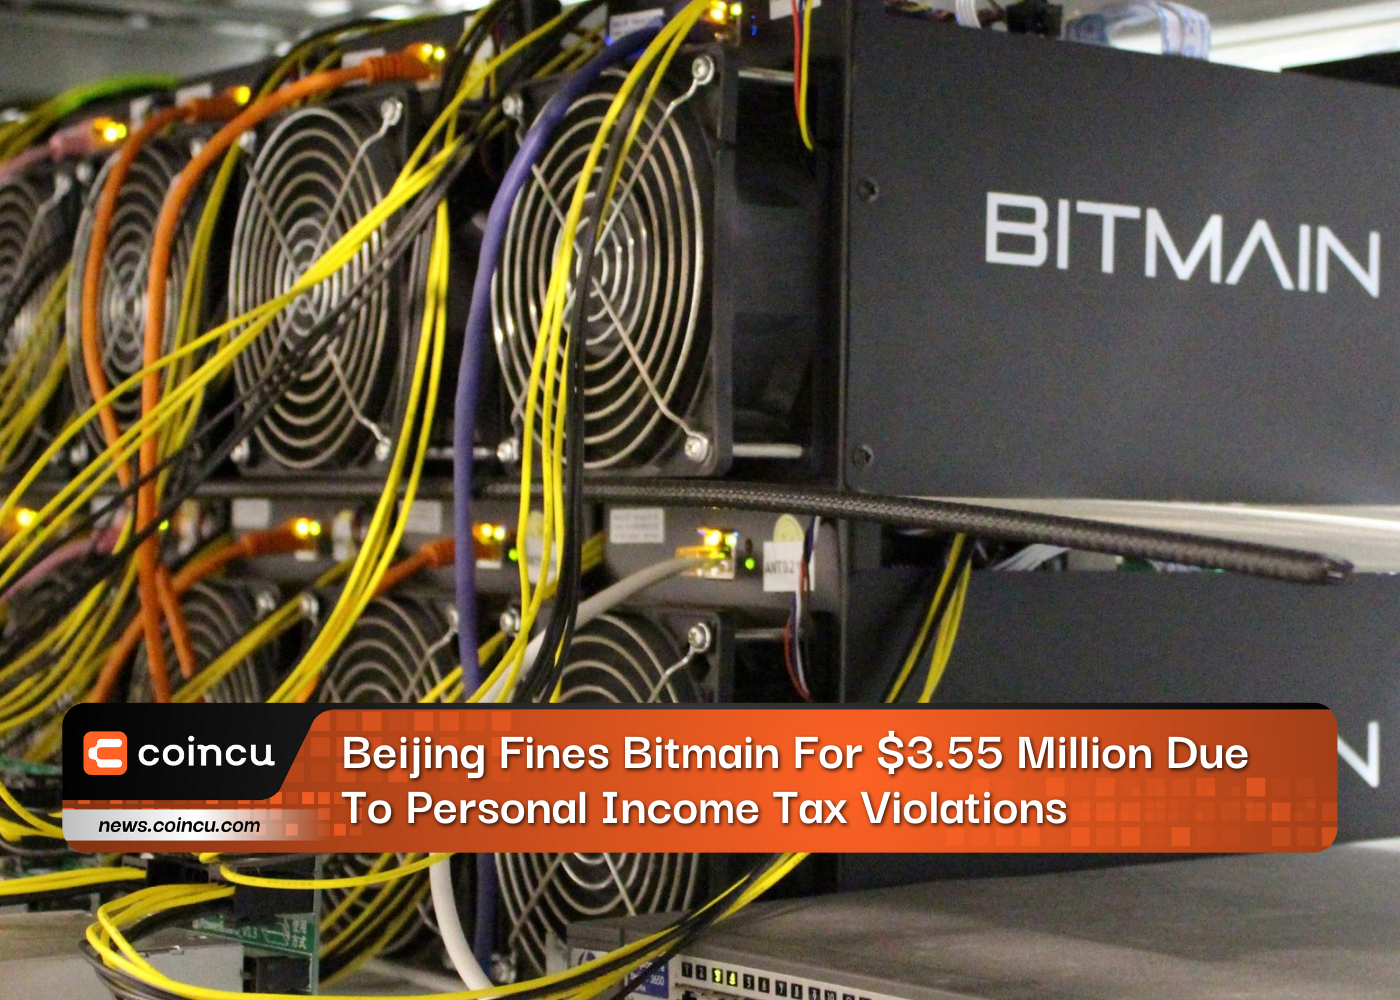 Pequim multa Bitmain em US$ 3.55 milhões devido a violações de imposto de renda pessoal